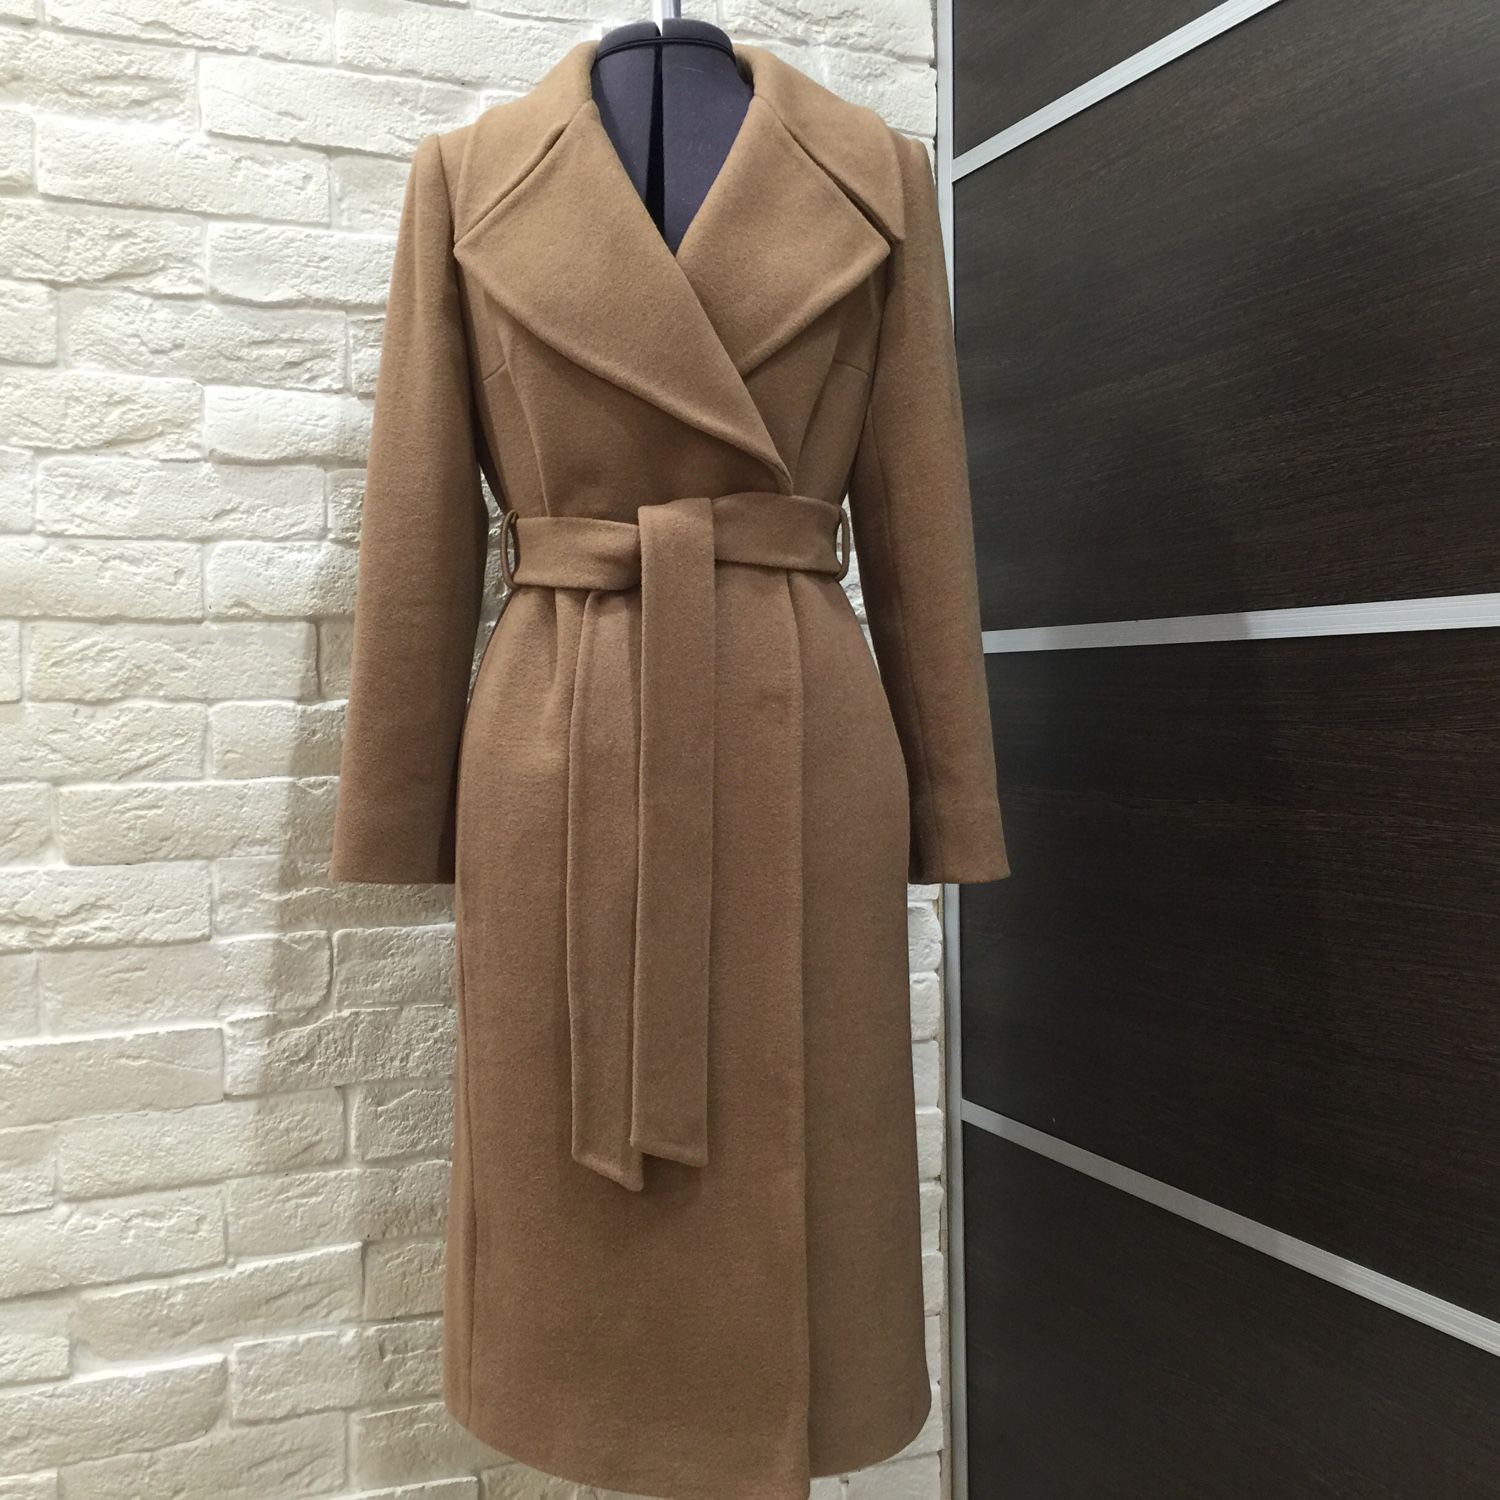 Кашемировое пальто женское классика